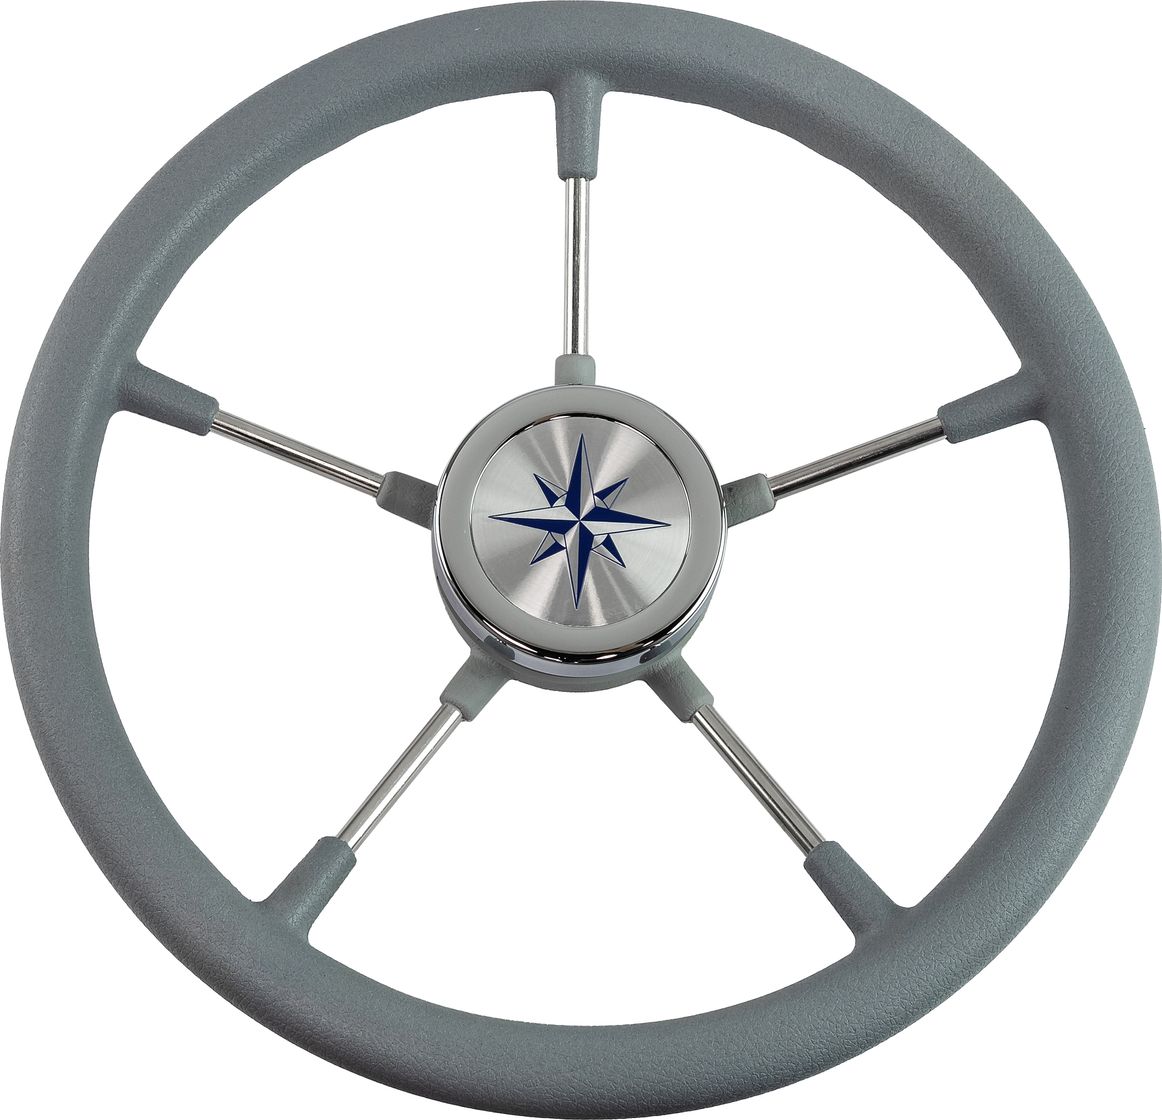 Рулевое колесо RIVA RSL обод серый, спицы серебряные д. 360 мм VN735022-03 рулевое колесо barracuda обод спицы серебряные д 350 мм vn135002 01